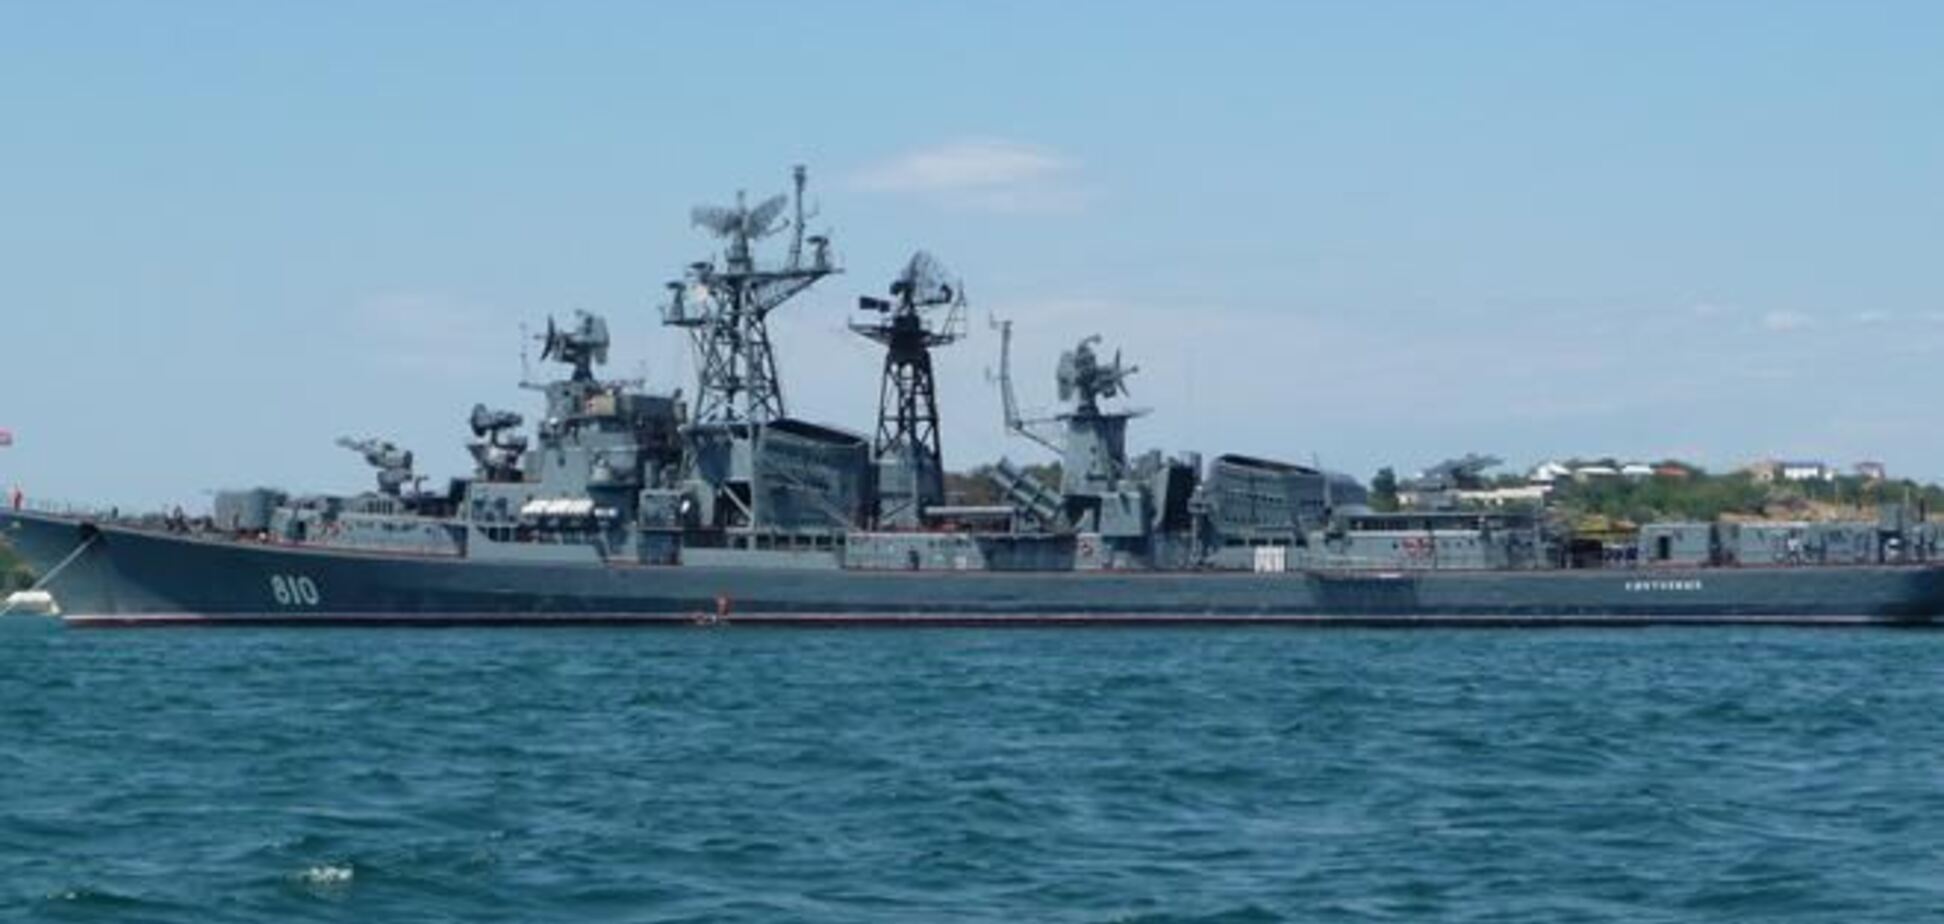 Украинские корабли в Донузлаве готовятся к штурму